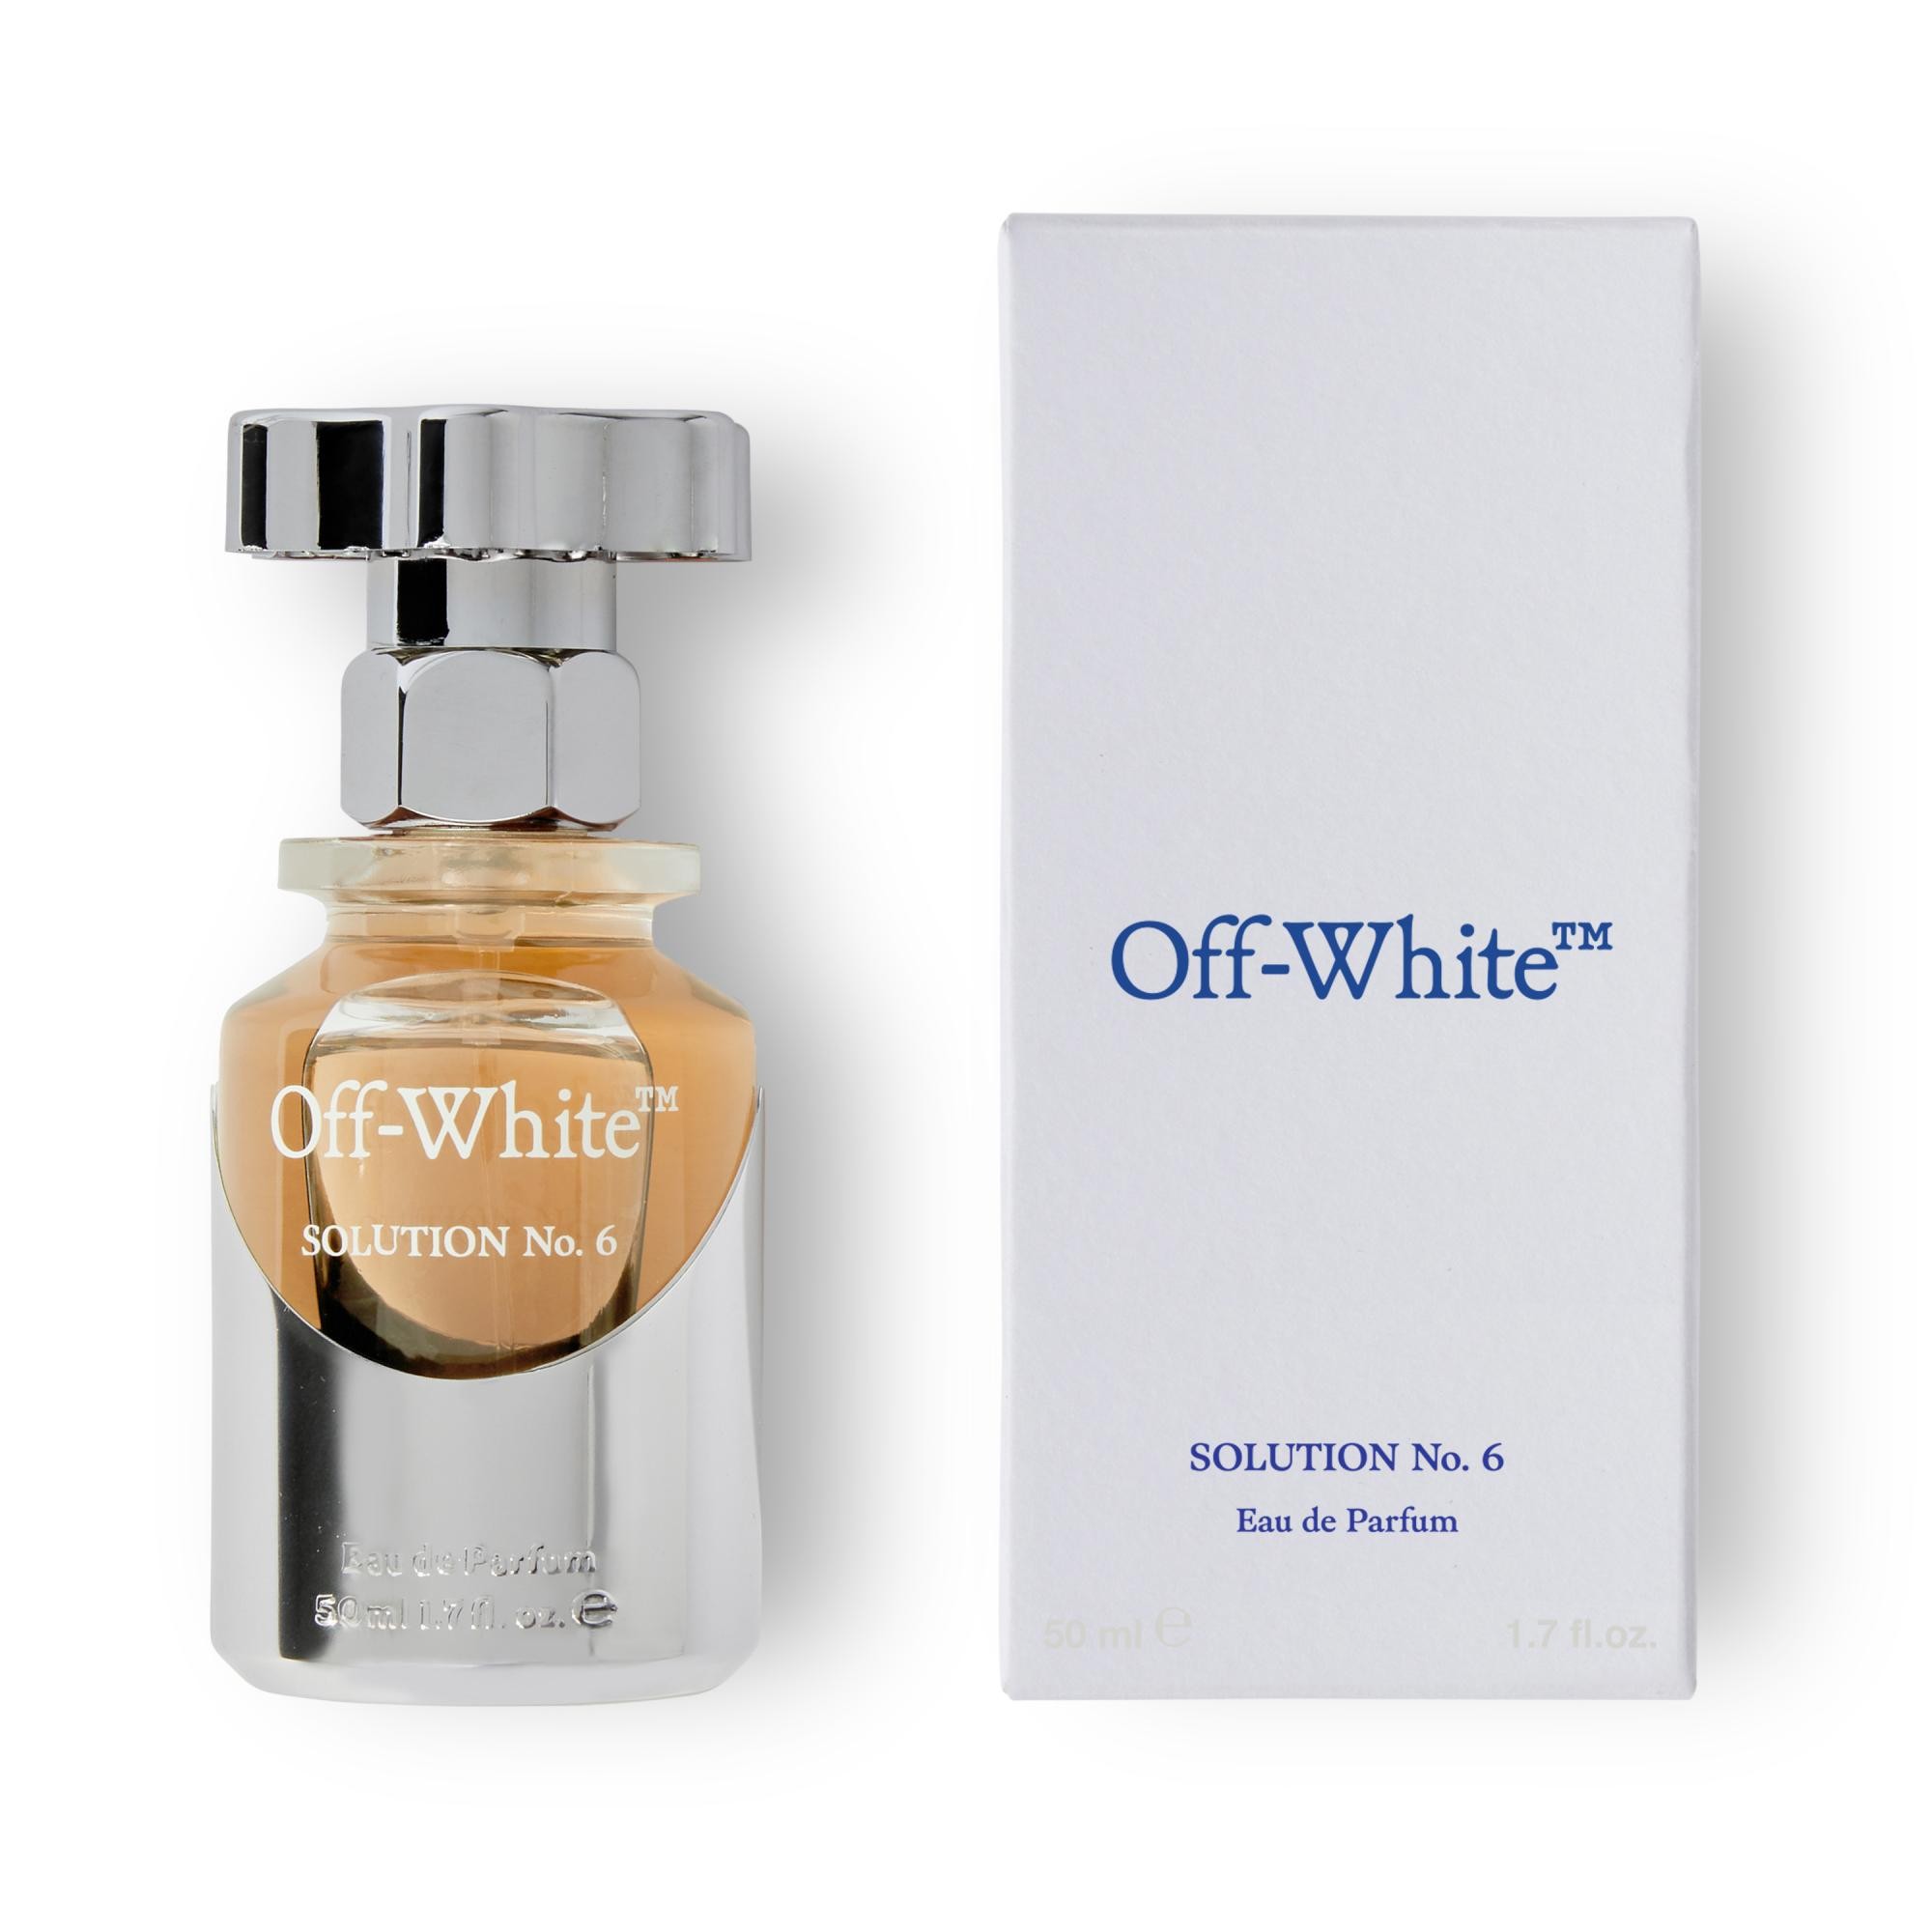 Off-White SOLUTION No. 6 Eau de Parfum 50 ml